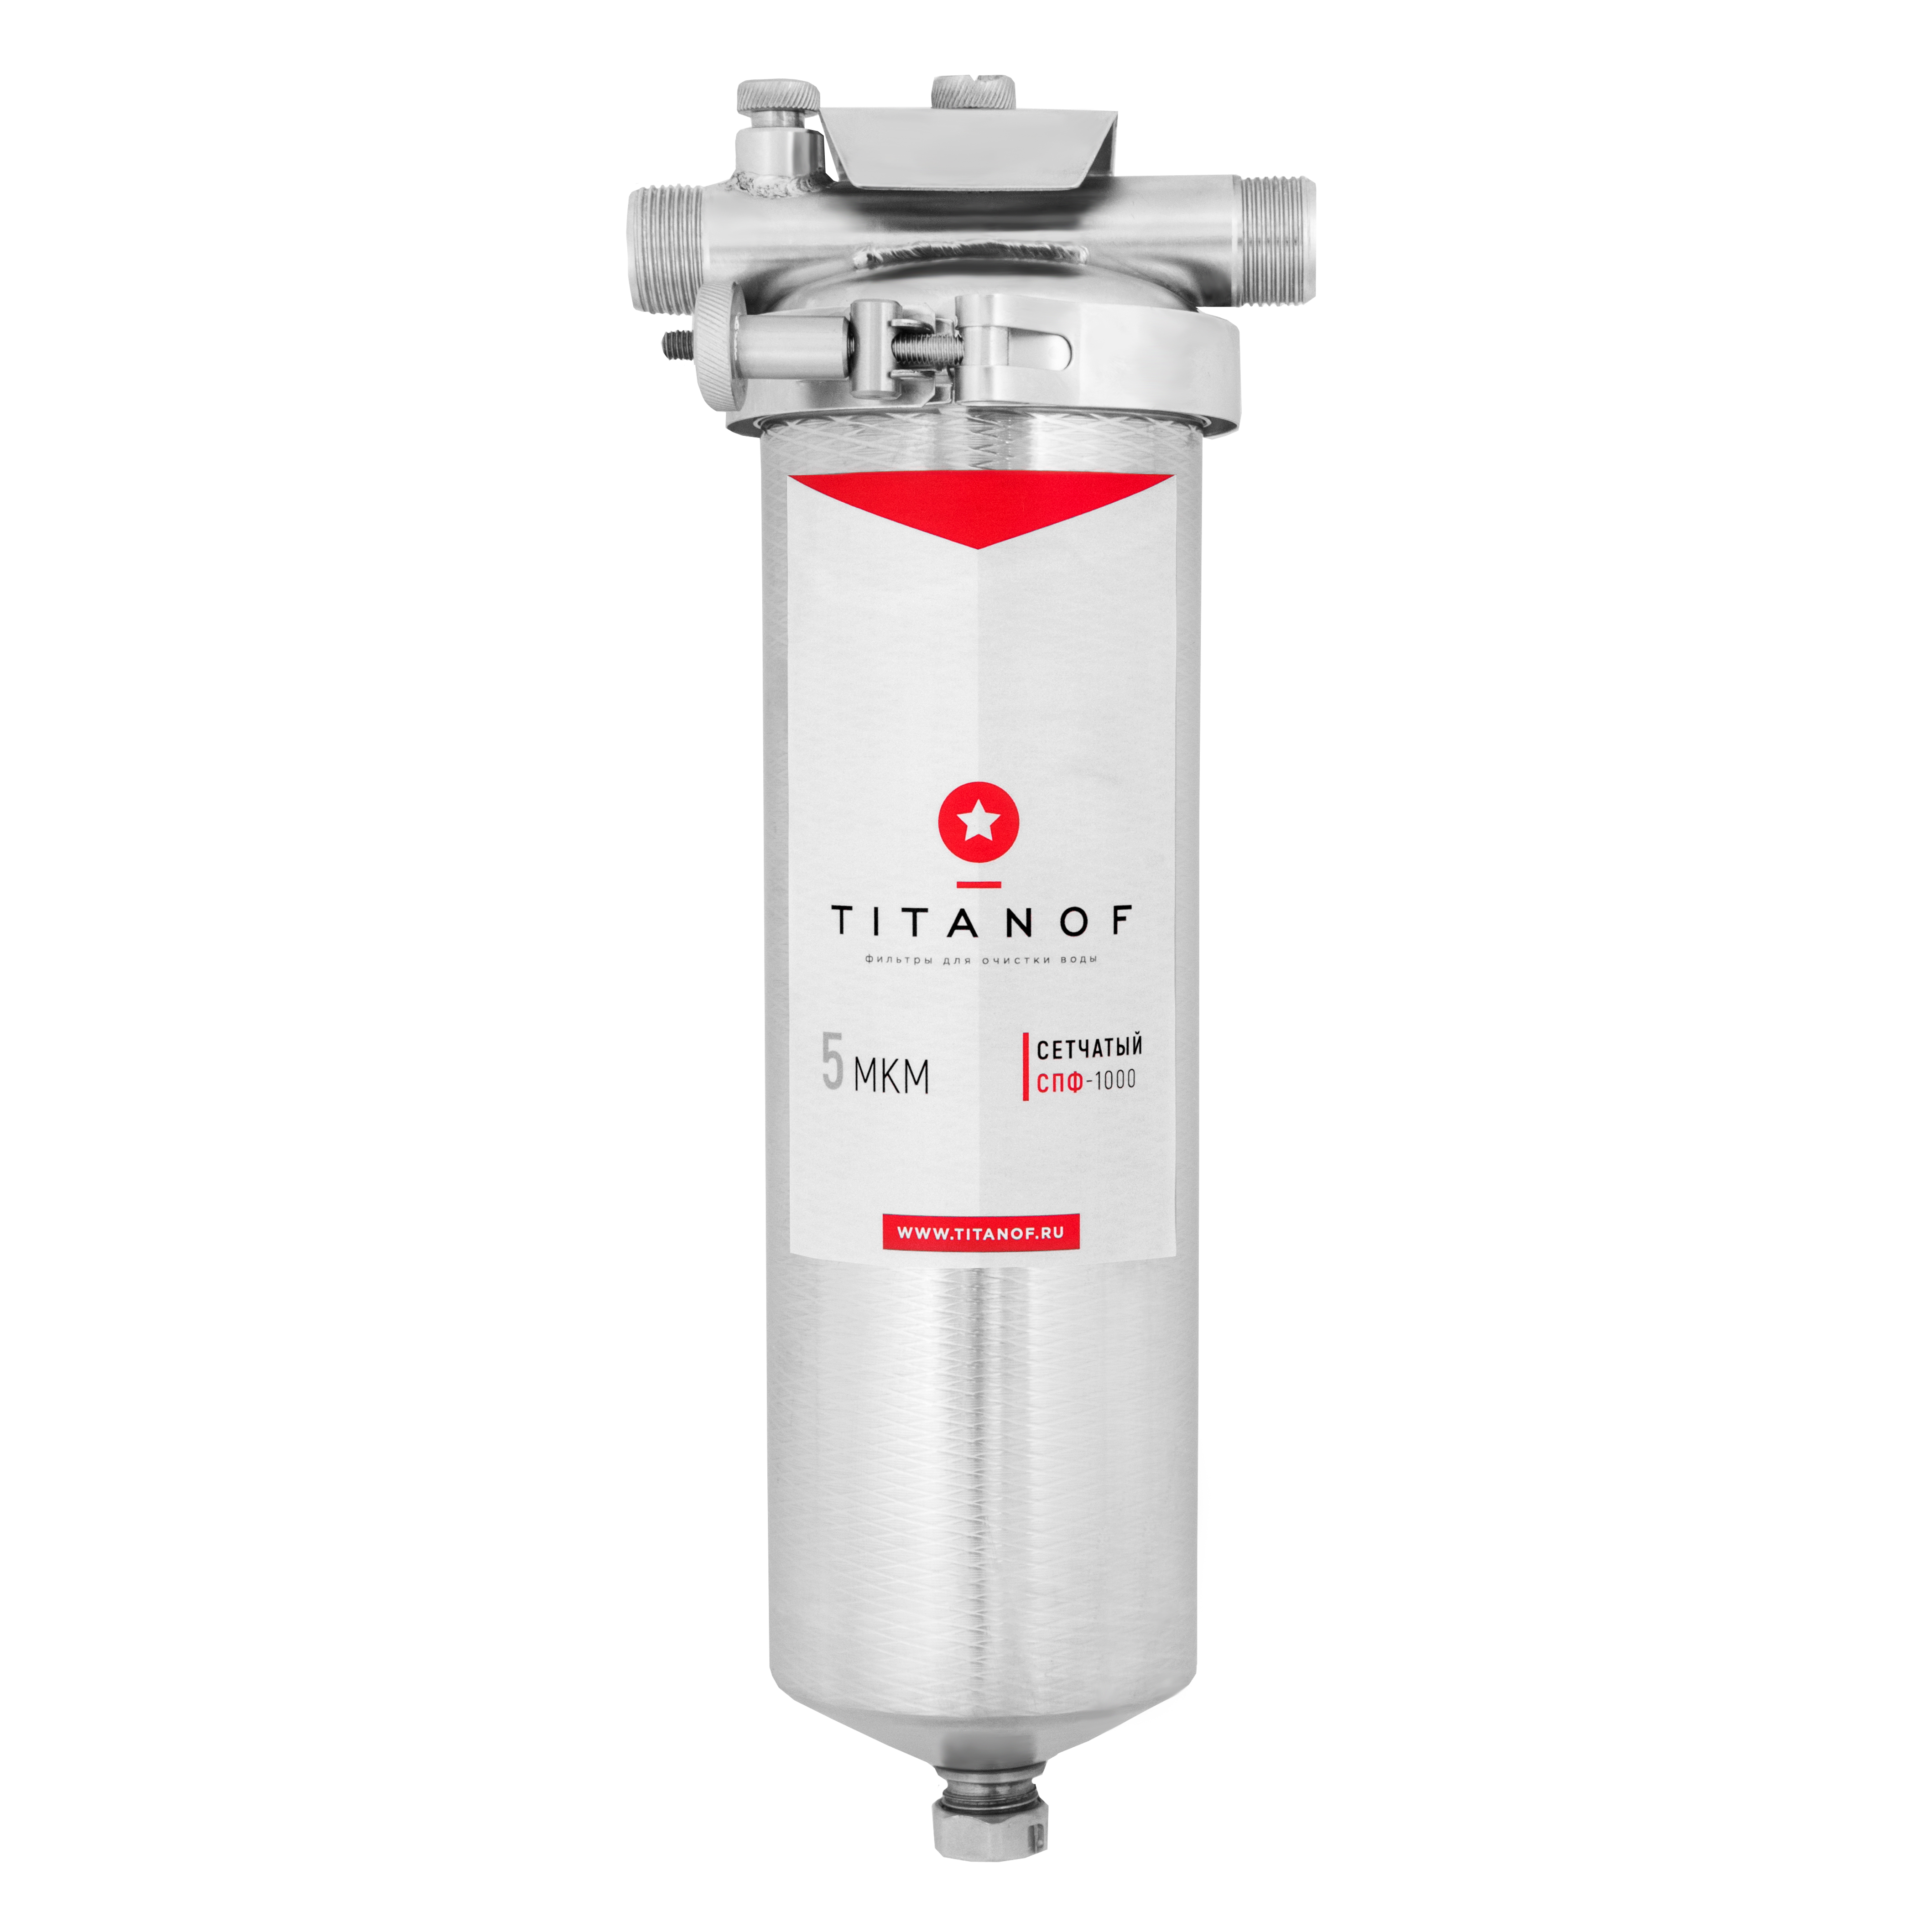 Фильтр для воды титанов отзывы. TITANOFF фильтр для воды. Фильтр для воды TITANOF ПТФ-1 500 Л/Ч. Магистральный фильтр Титан. Механический 5 микронный фильтр для очистки воды.